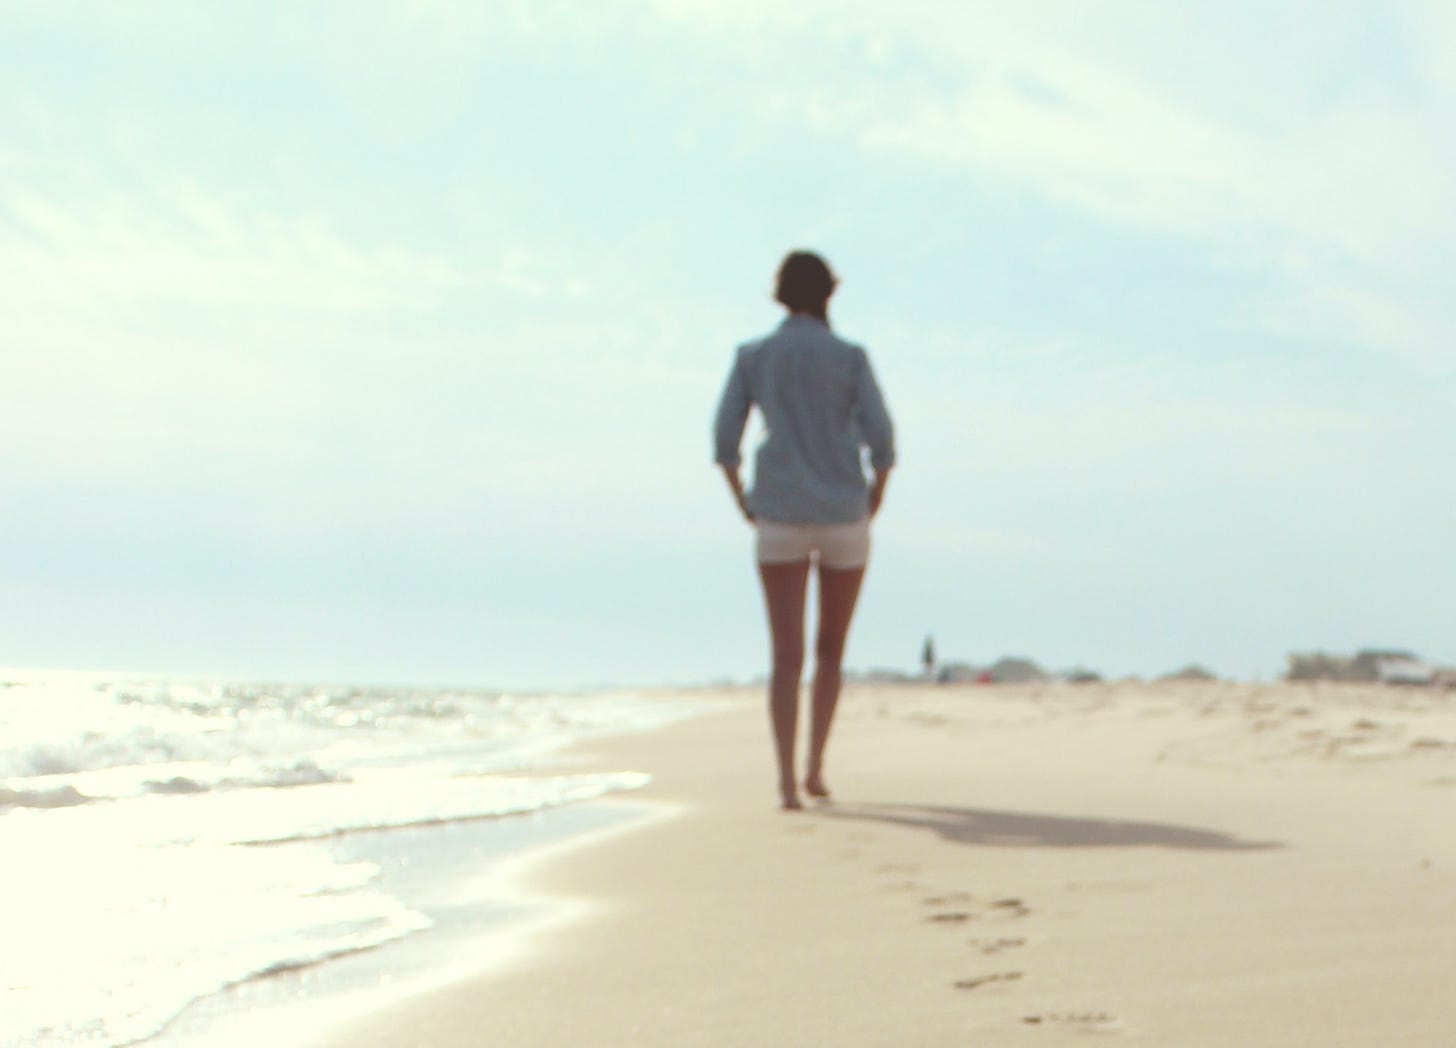 Mulher de short branco e camisa azul clara de mangas compridas dobradas caminha descalça em areia da praia com o mar quebrando as ondas do seu lado esquerdo, em dia de céu azul.